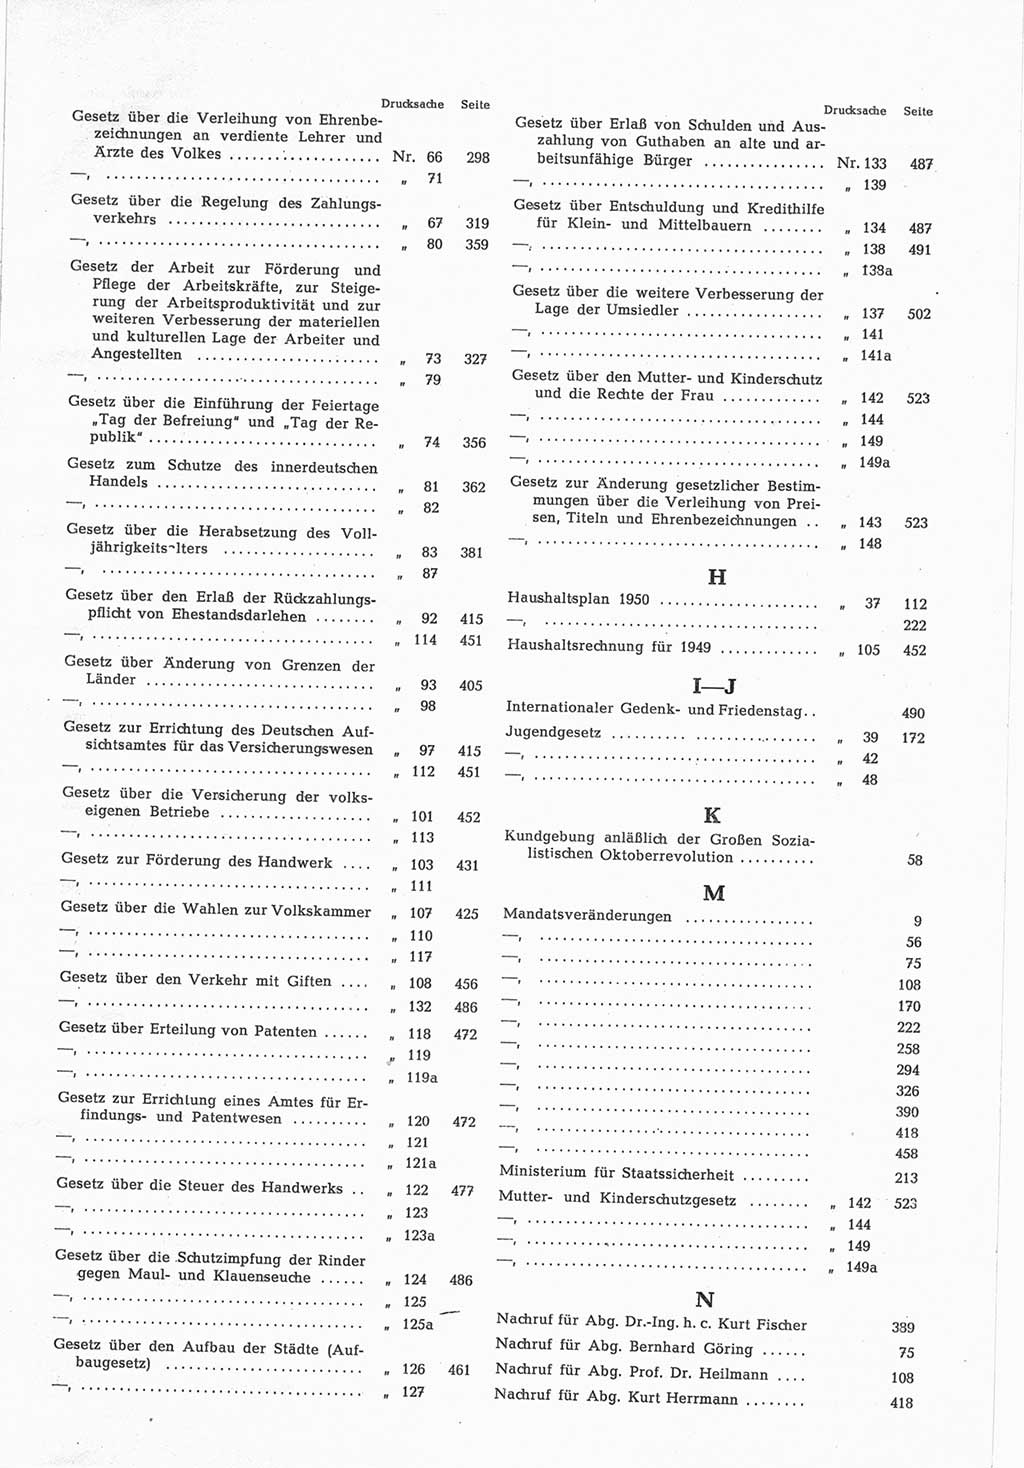 Provisorische Volkskammer (VK) der Deutschen Demokratischen Republik (DDR) 1949-1950, Dokument 849 (Prov. VK DDR 1949-1950, Dok. 849)